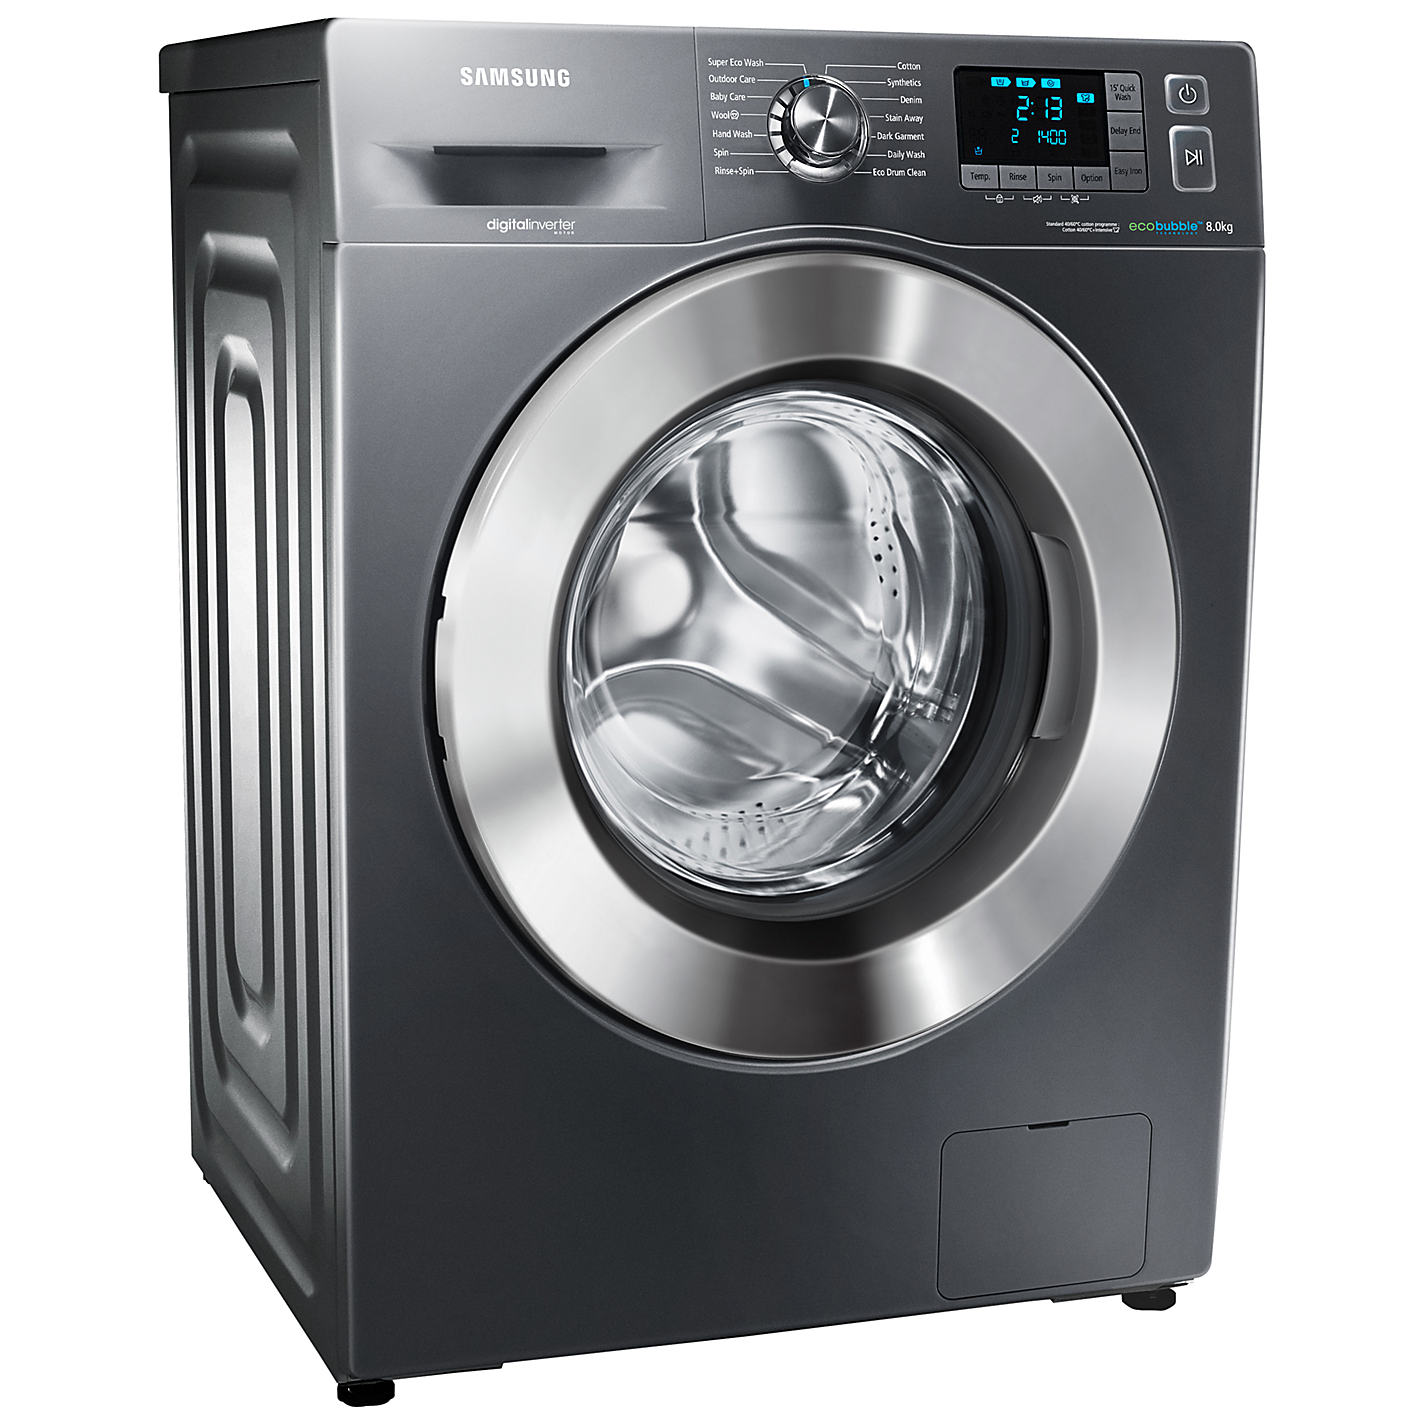 Samsung washing machine service centre